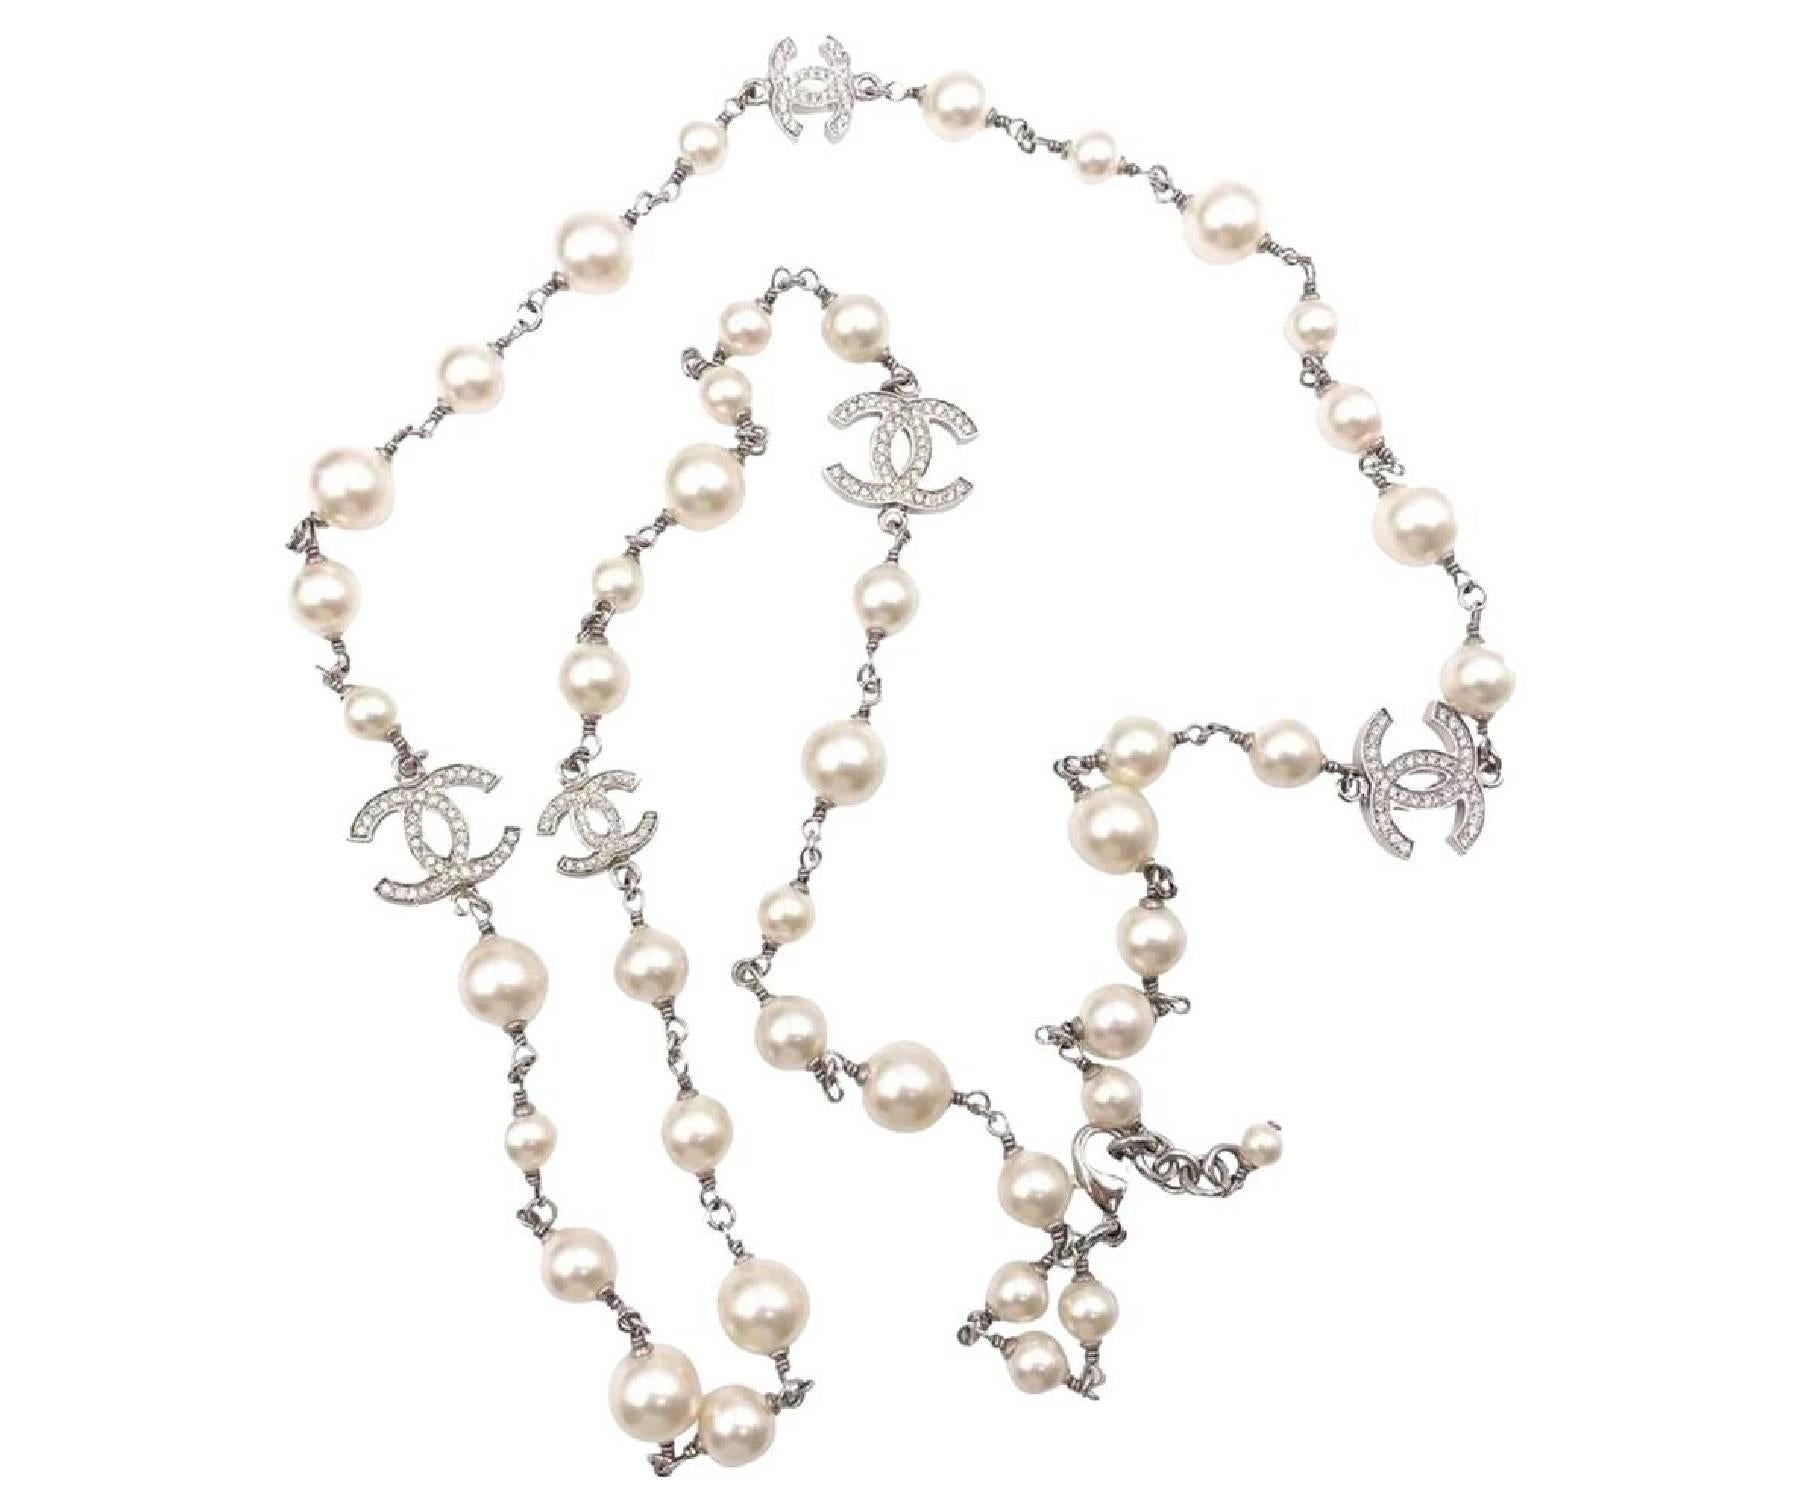 Chanel Classic 5 Silver CC Crystal Faux Perles Long collier

* Marqué 16
* Fabriqué en France
* Livré avec son sac à poussière d'origine

-Il mesure environ 42